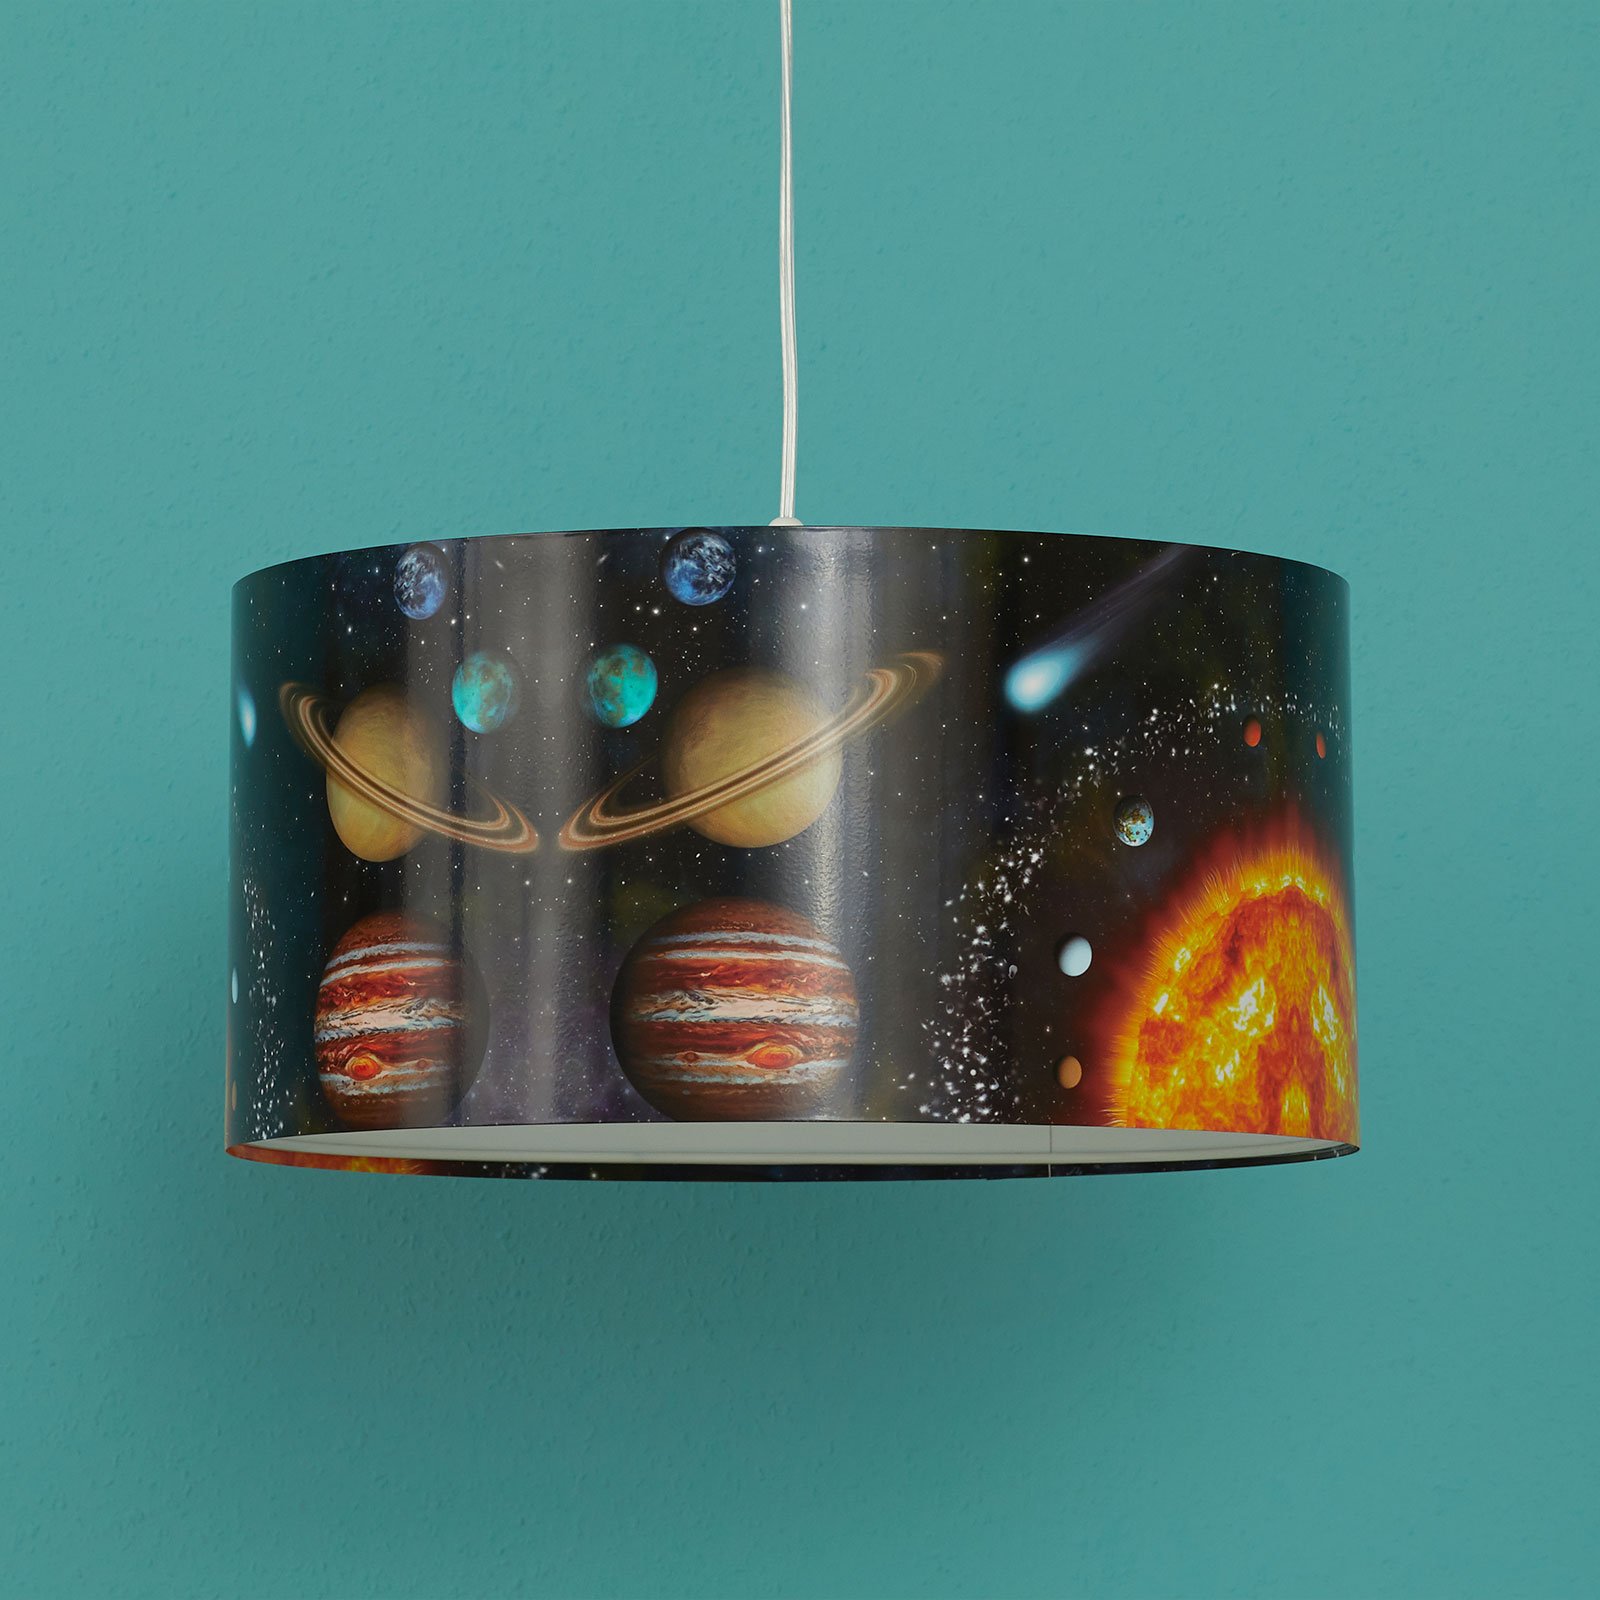 Space hanglamp met ruimteprint